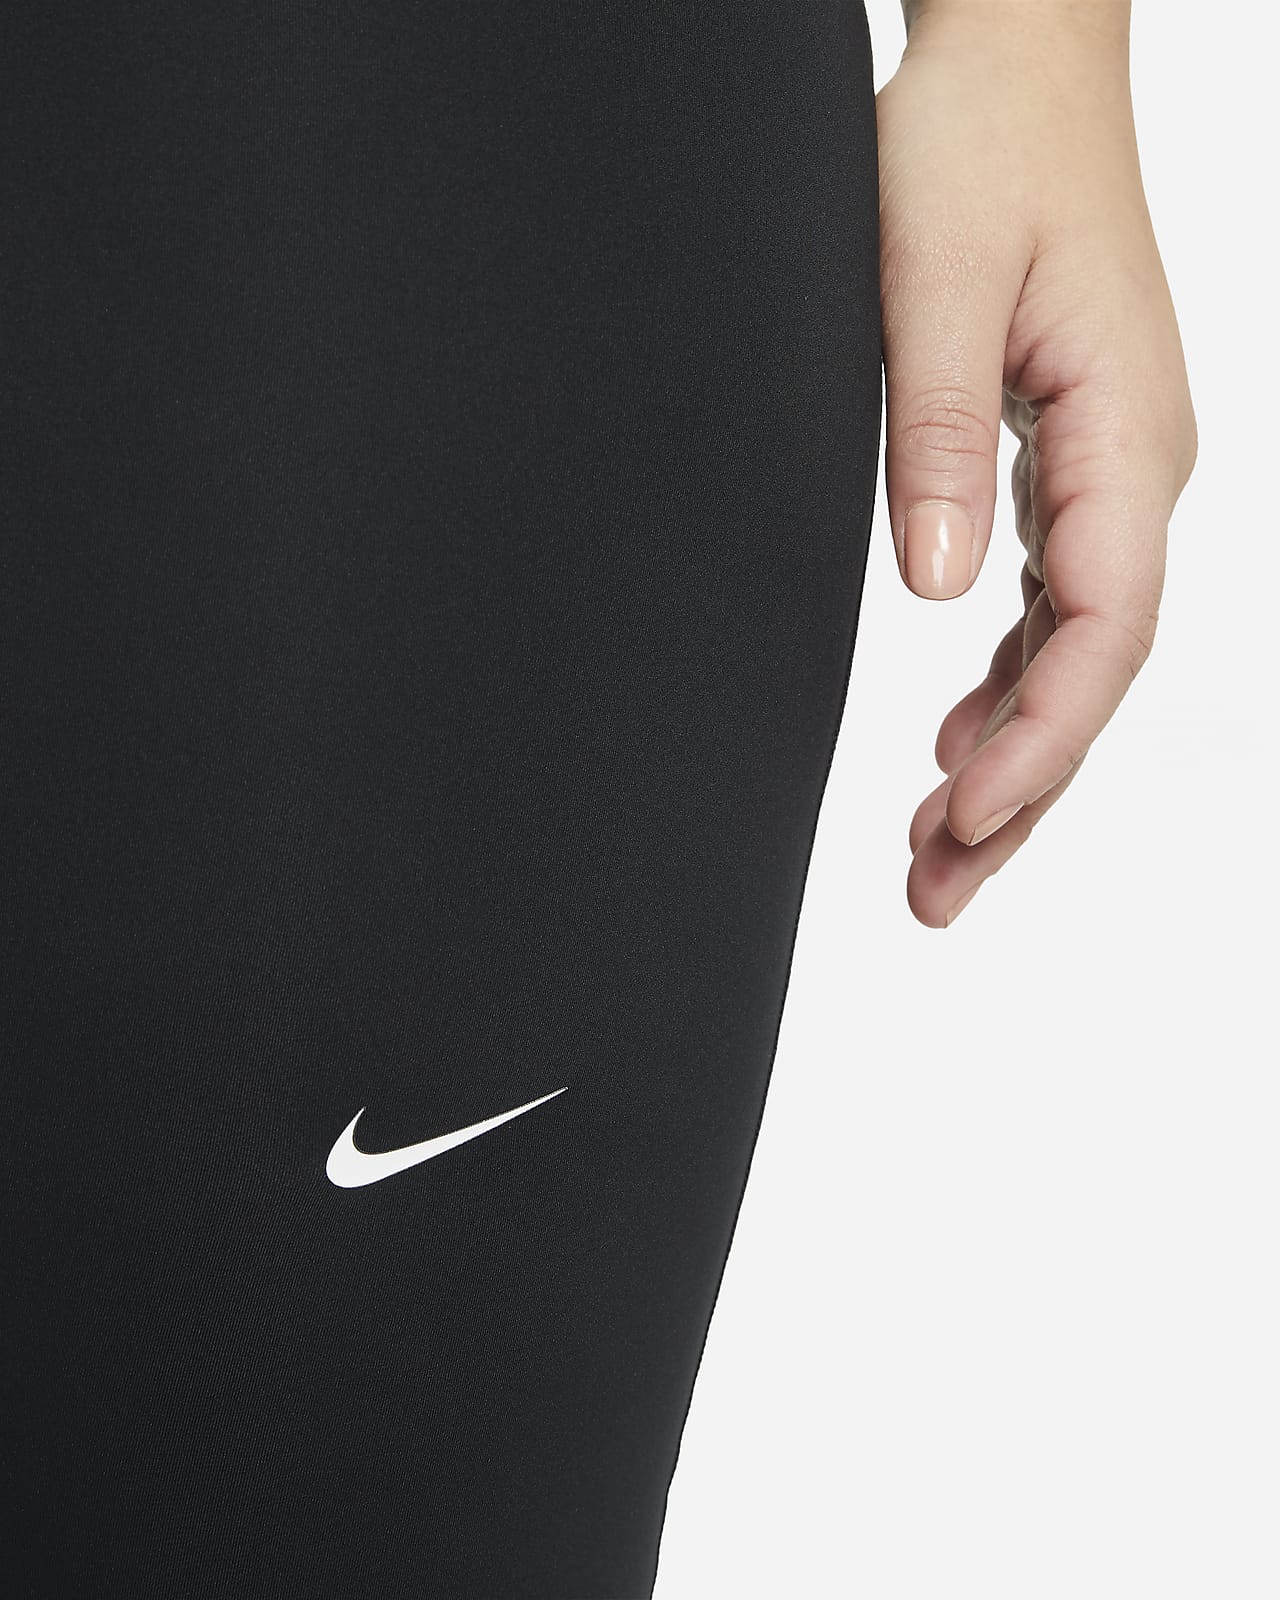 Nike Pro 365 289149 Women's Cropped Leggings (Plus Size) Size 2X